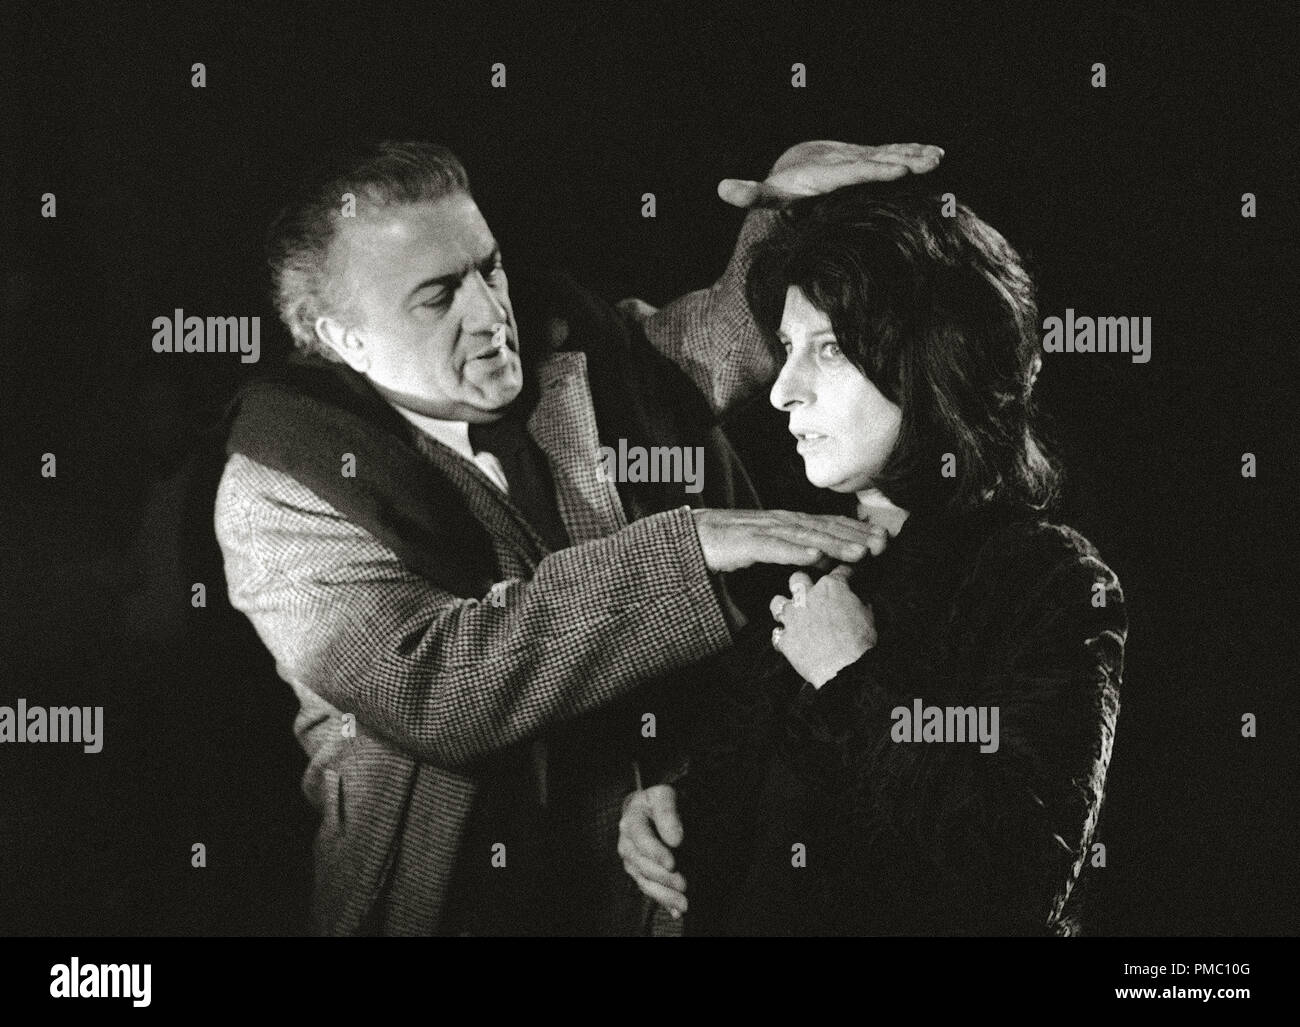 Italienische Regisseur Federico Fellini und Anna Magnani in Rom, Italien, am Set des Films "Roma", die er leitet (1972), United Artists Datei Referenz # 33595 022 THA Stockfoto